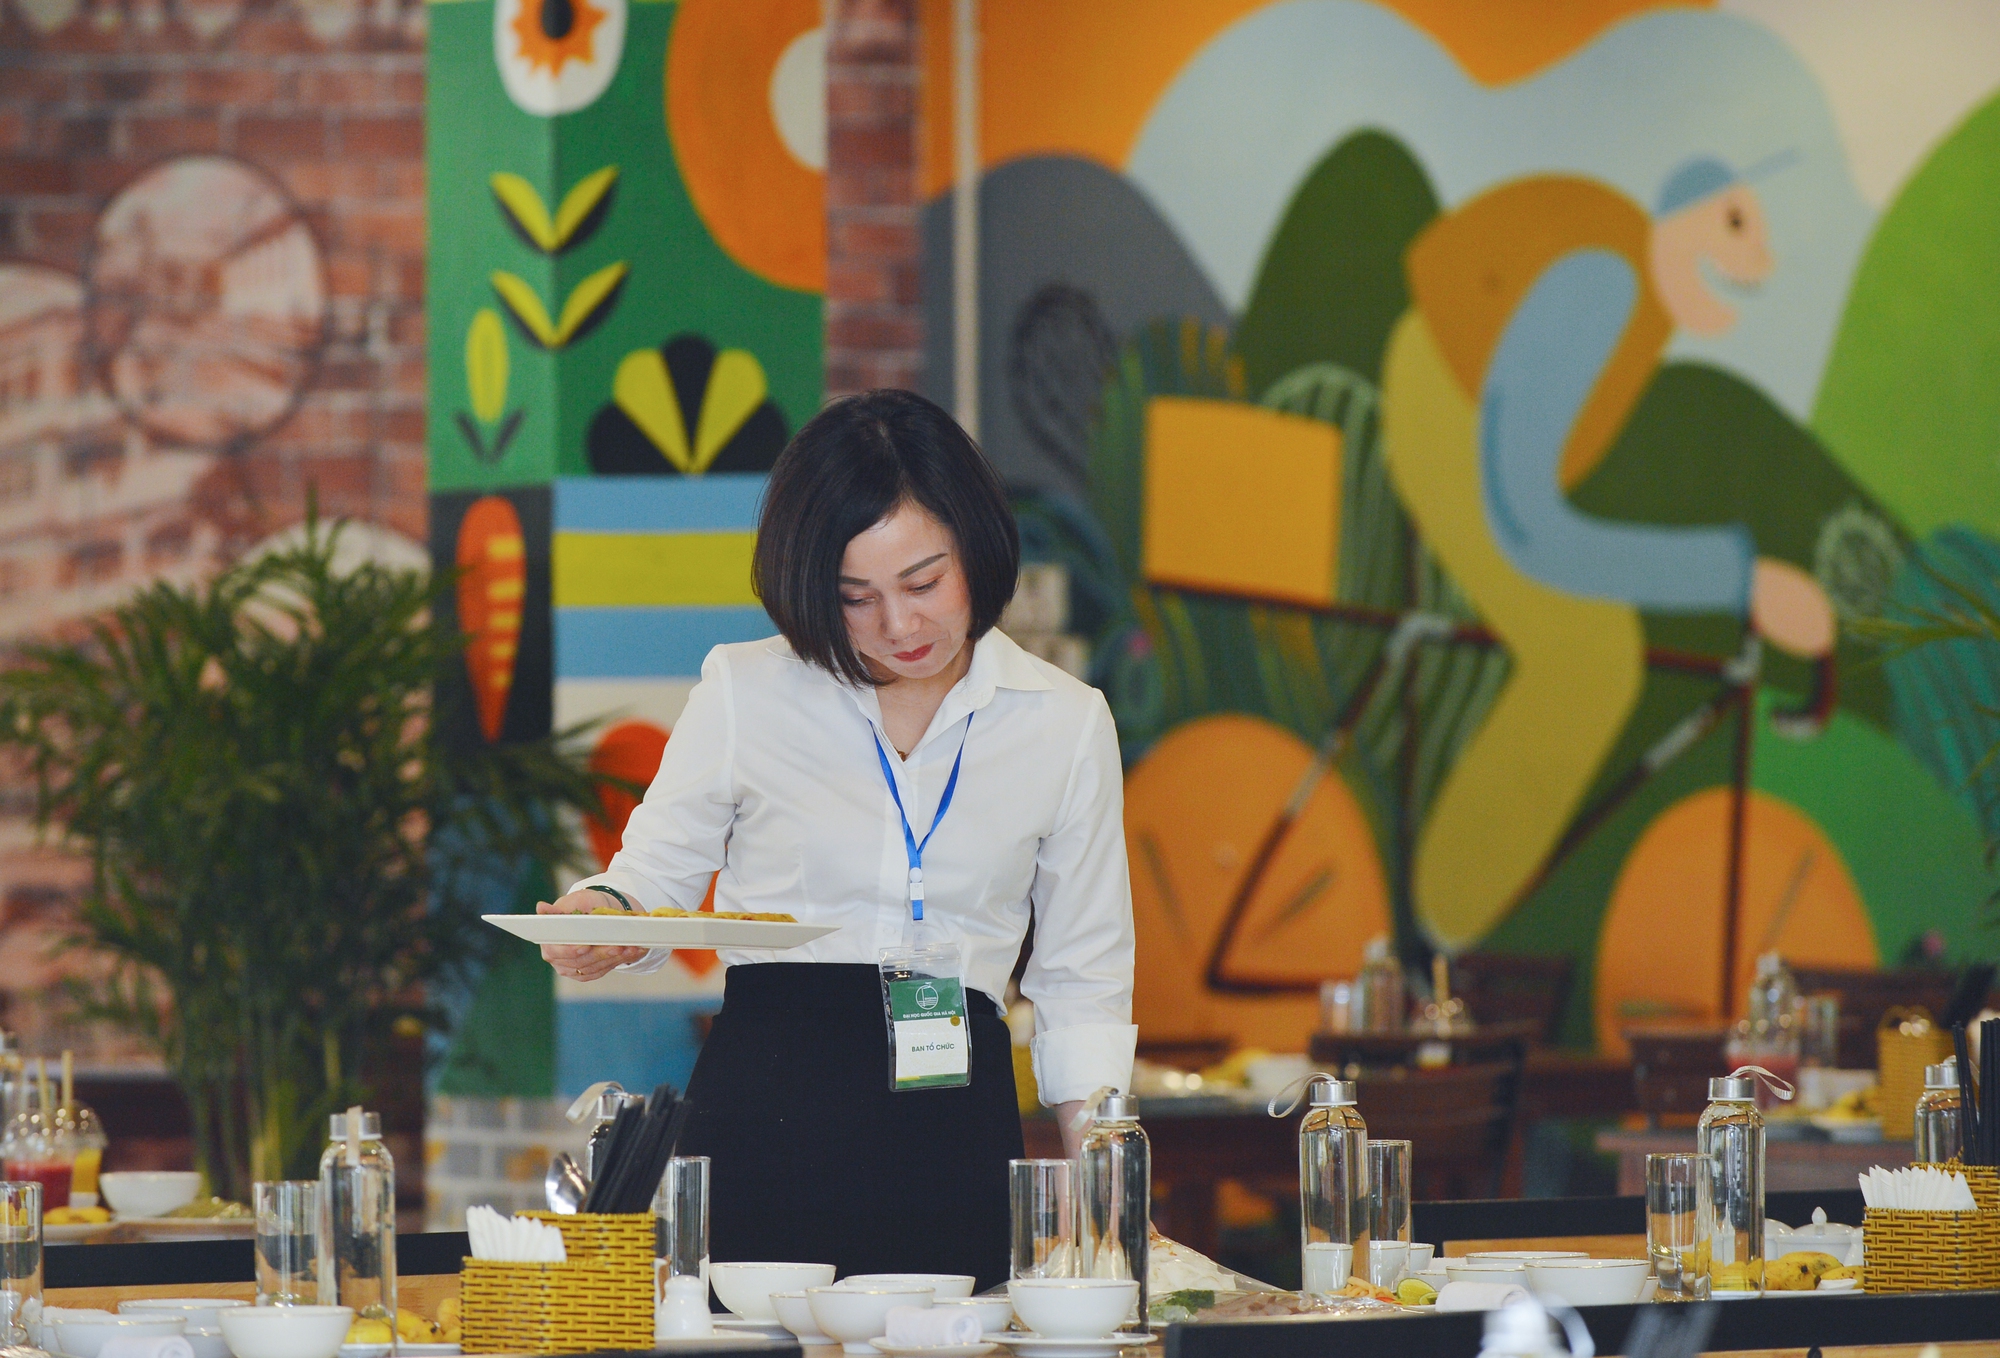 Cận cảnh bữa trưa của Thủ tướng Lý Hiển Long và phu nhân tại Đại học QGHN - Ảnh 3.